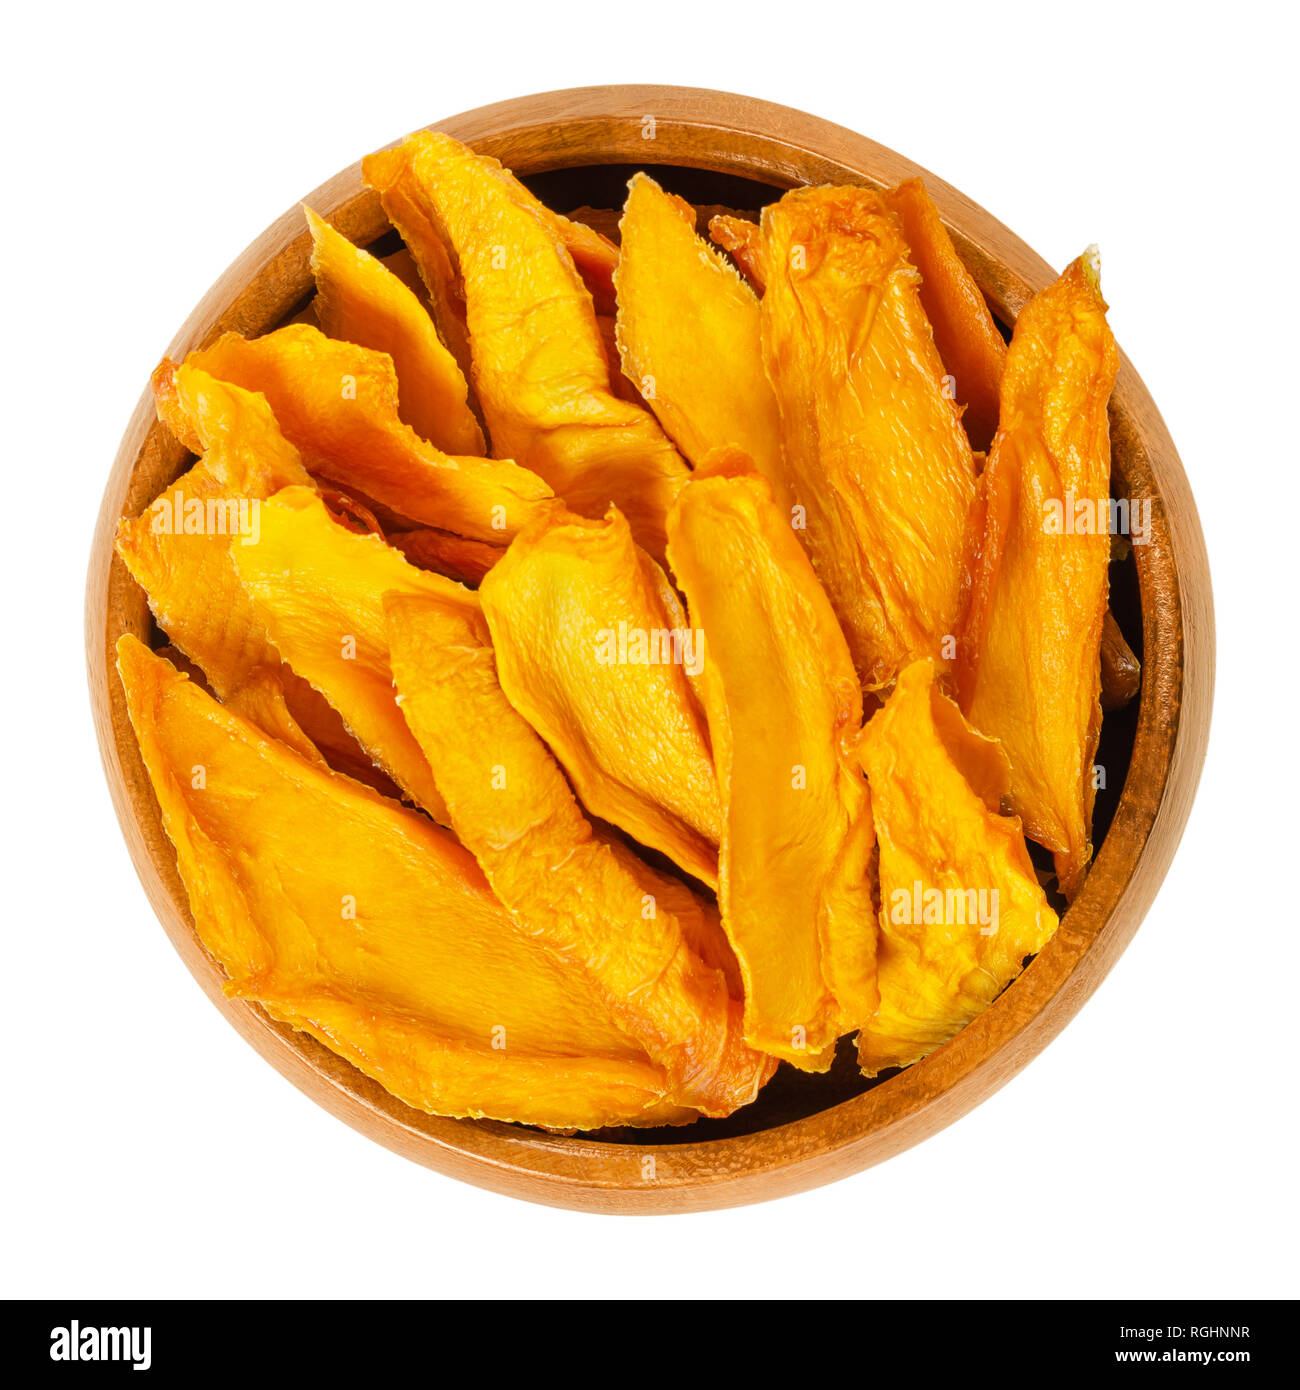 Tiras de mango de madera seca en el tazón. Rodajas de mango deshidratado. Jugosas frutas de hueso tropical con amarillo y anaranjado. Mangifera. Foto de stock